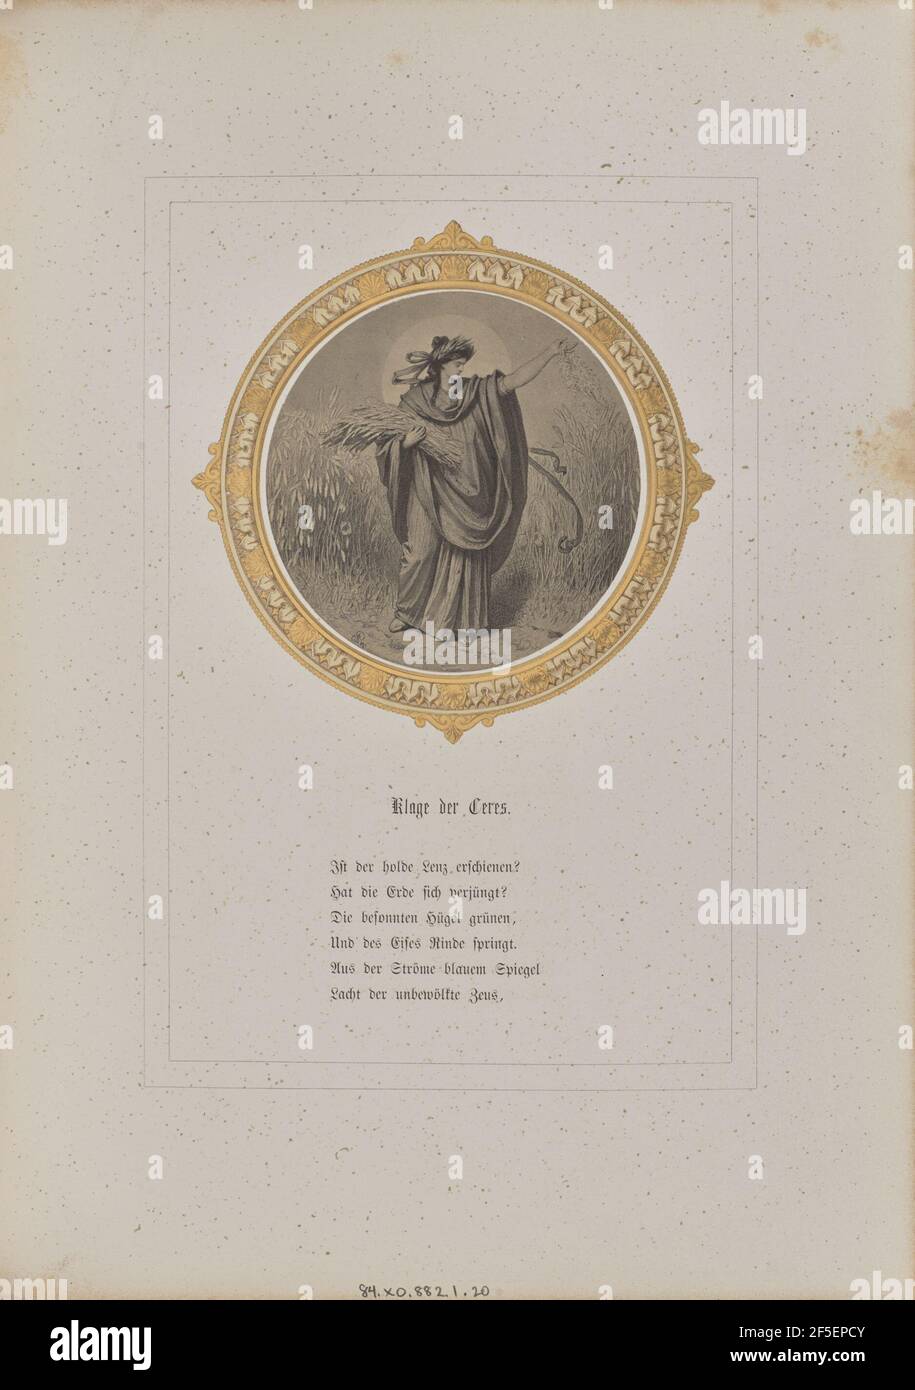 Klage der Ceres. Josef Albert (German, 1825 - 1886) Stock Photo